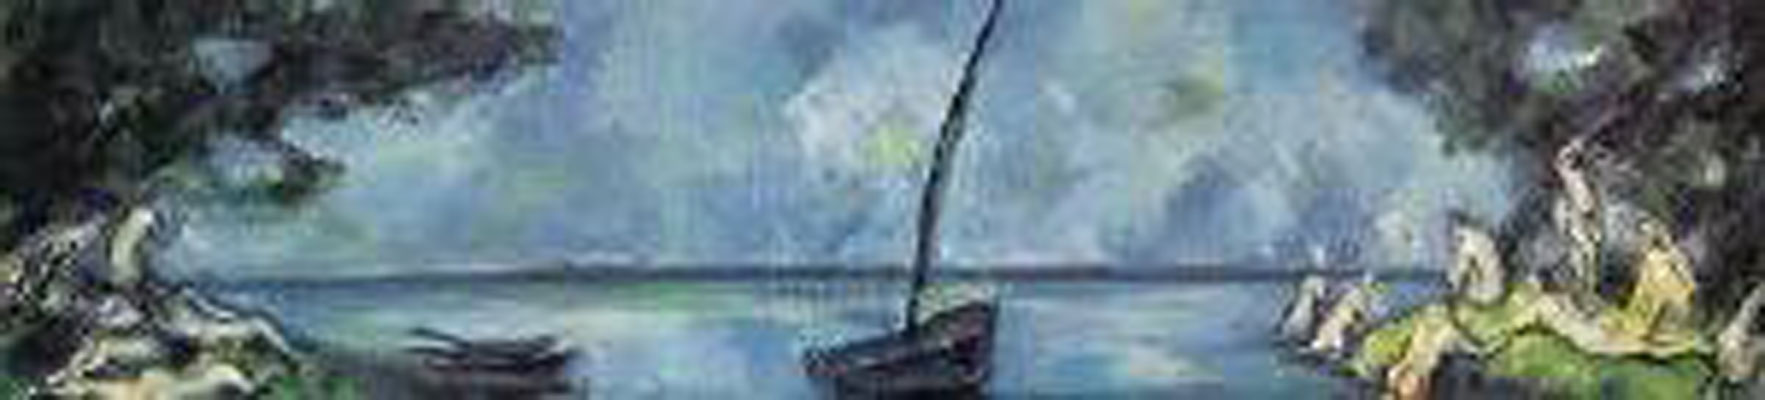 Paul Cezanne Boat & Bathers